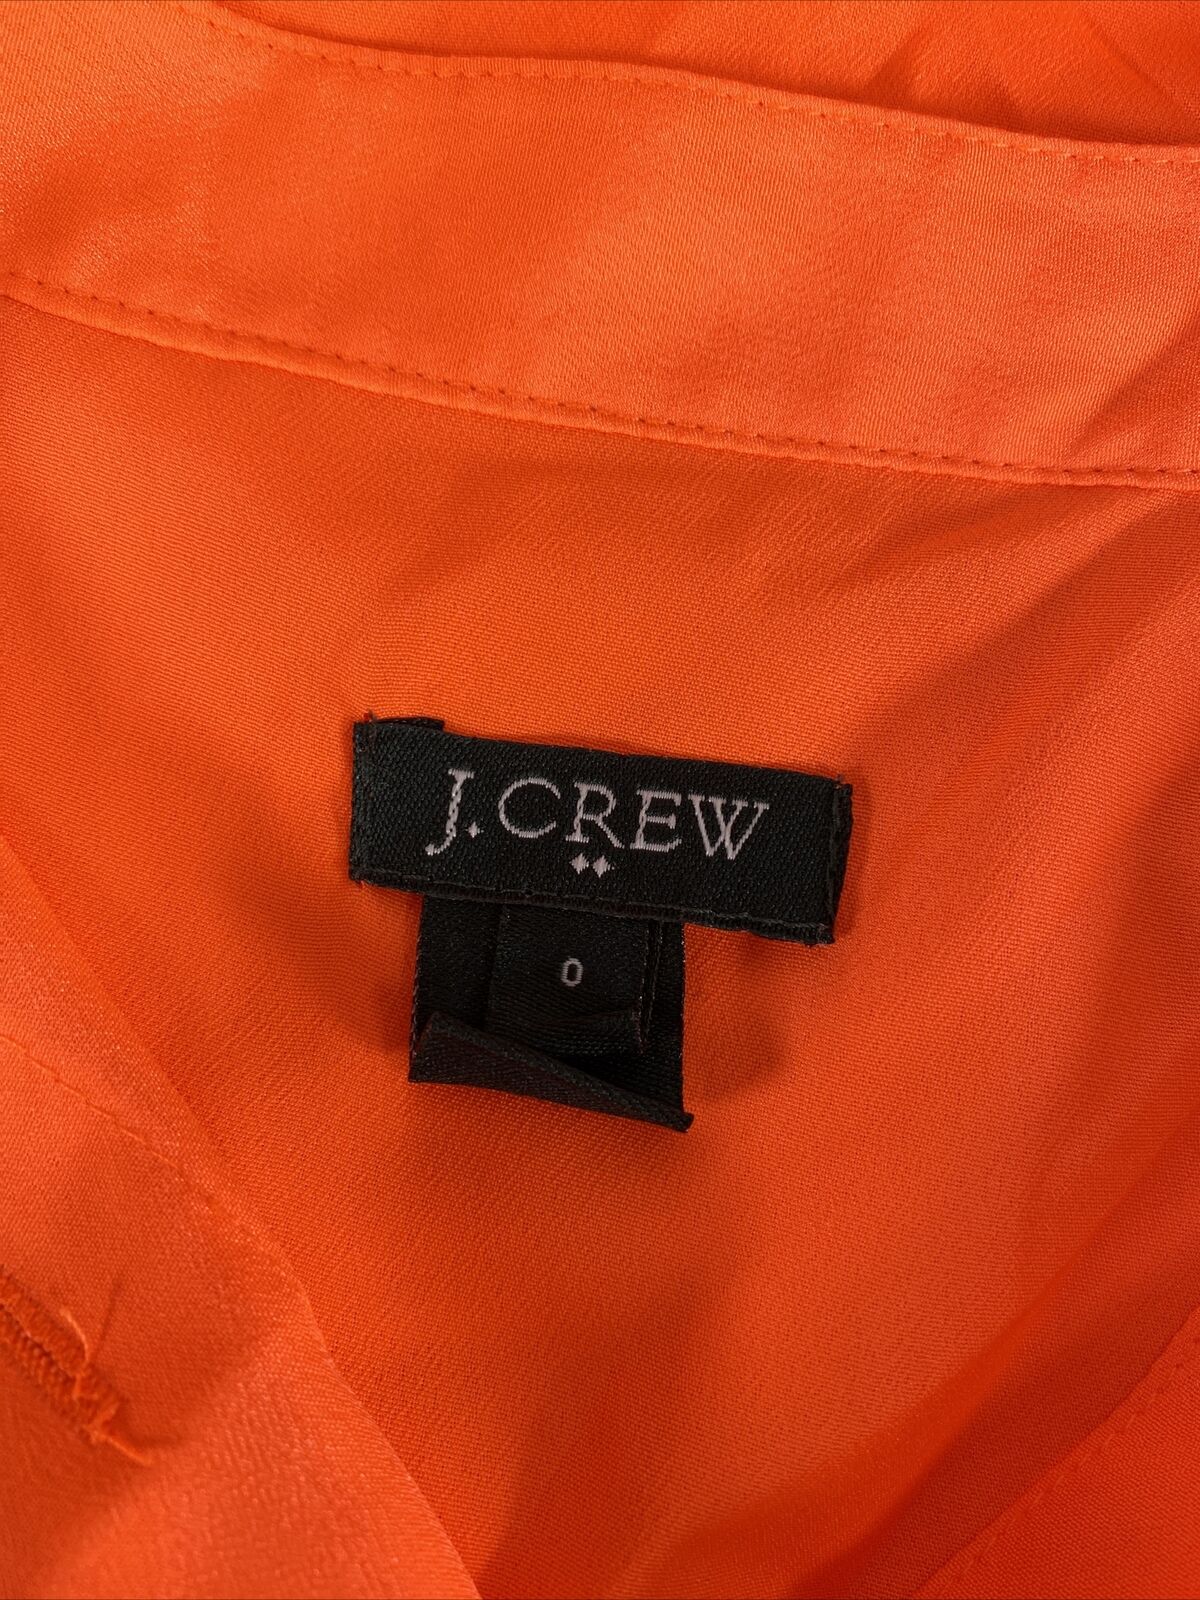 J.Crew Blusa sin mangas con bolsillo drapeado de color naranja brillante para mujer - 0